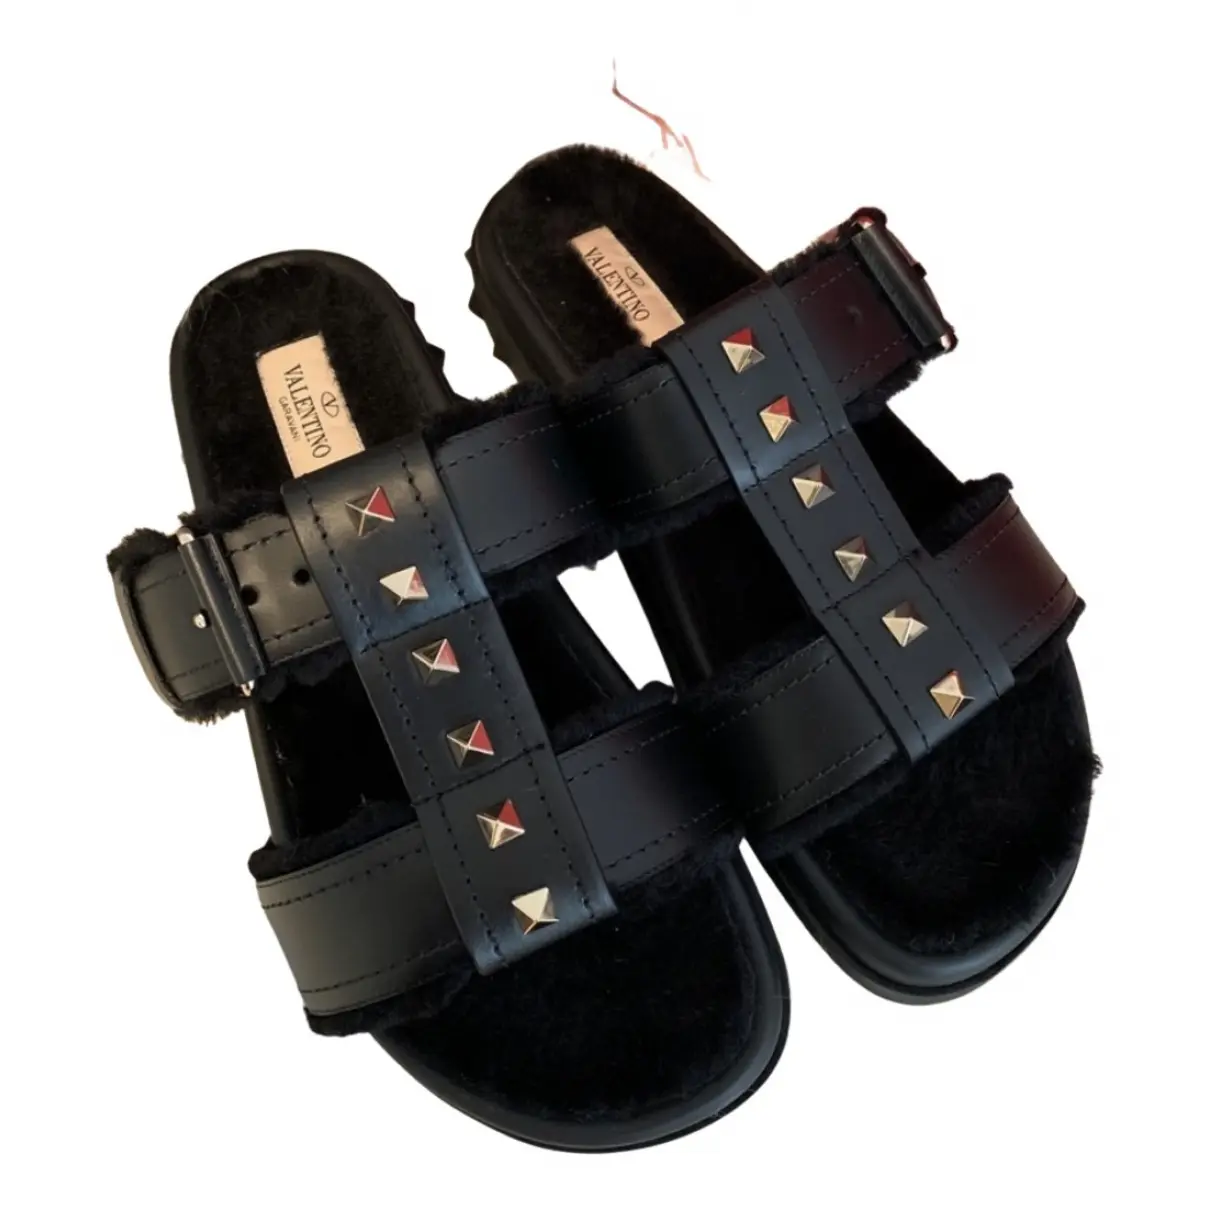 Rockstud leather sandal Valentino Garavani